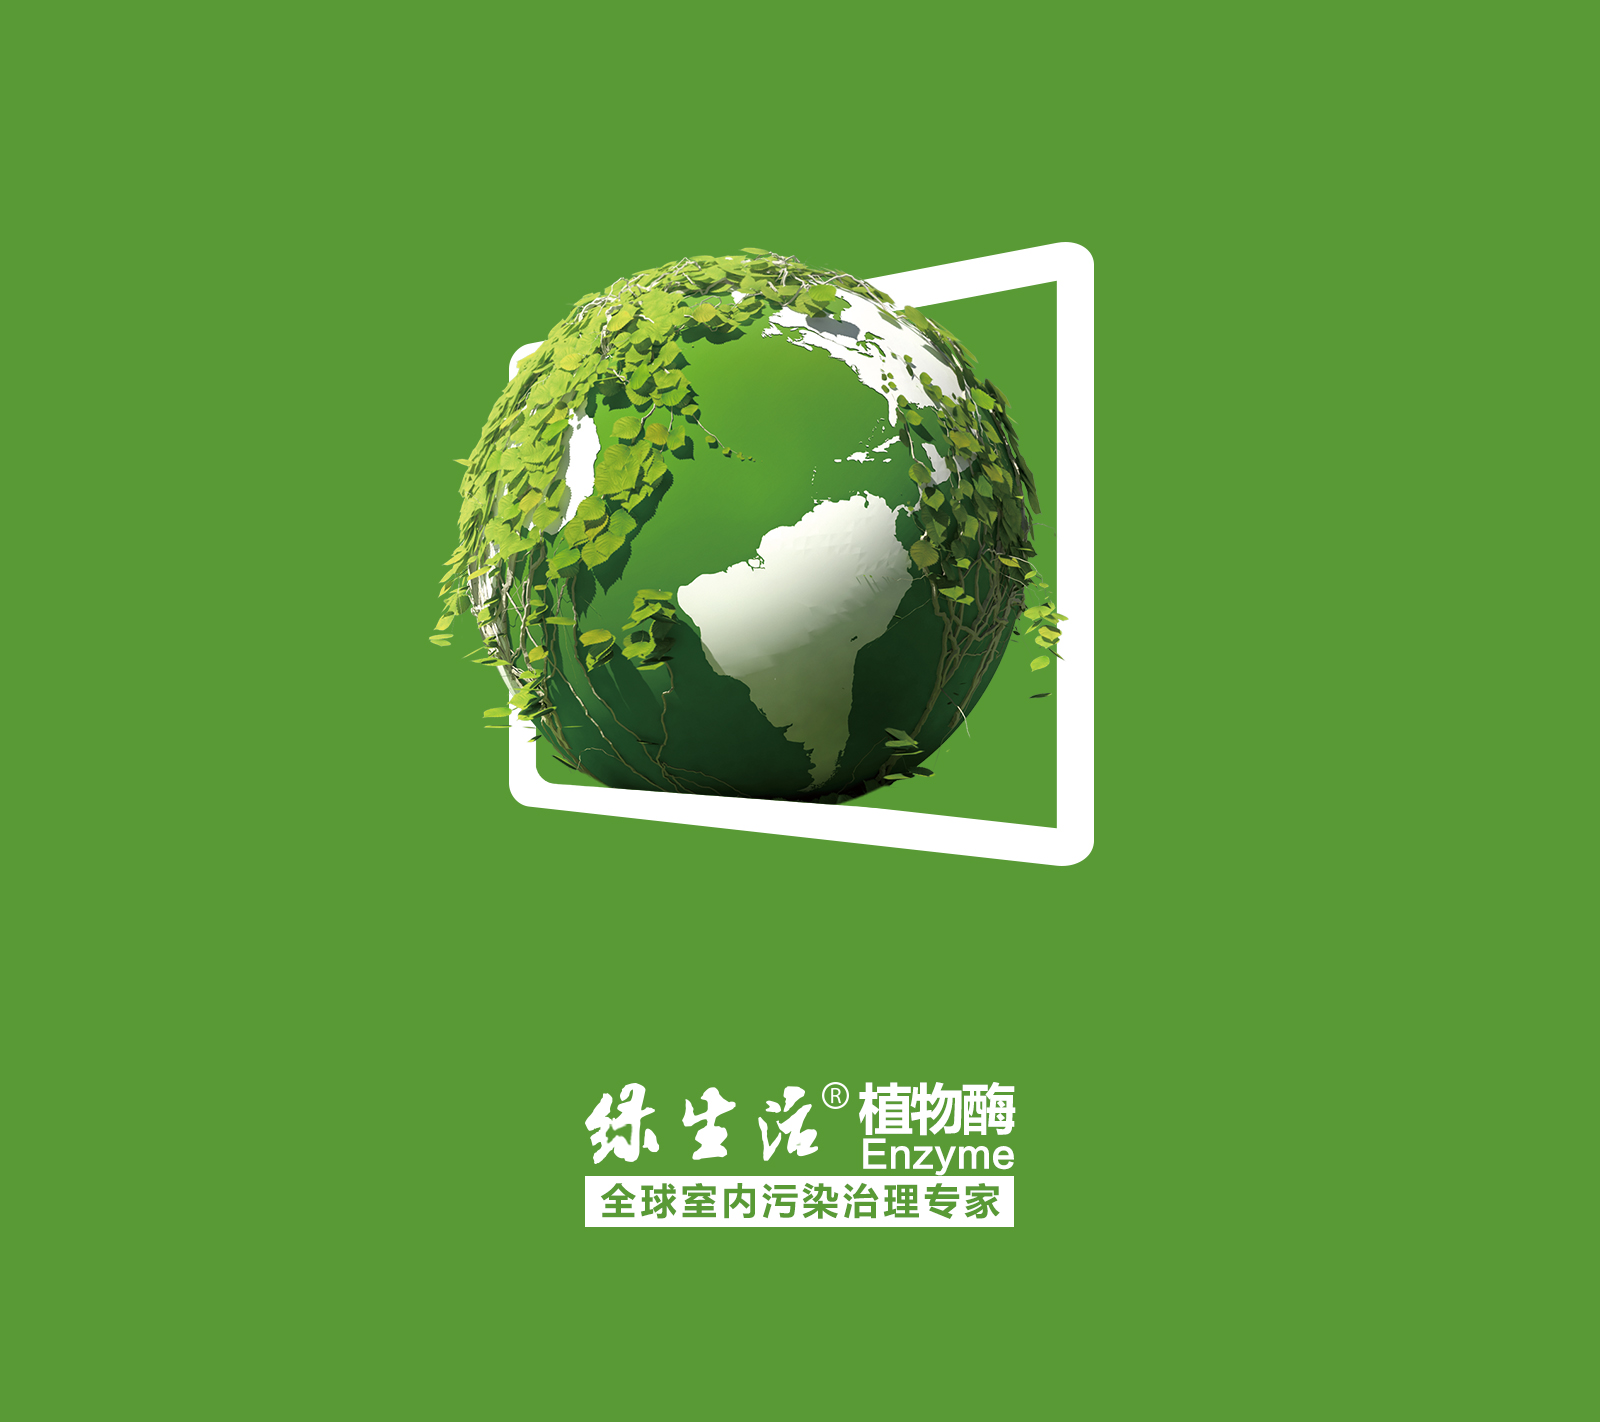 綠生活（廣州）生物環保科技有限公司